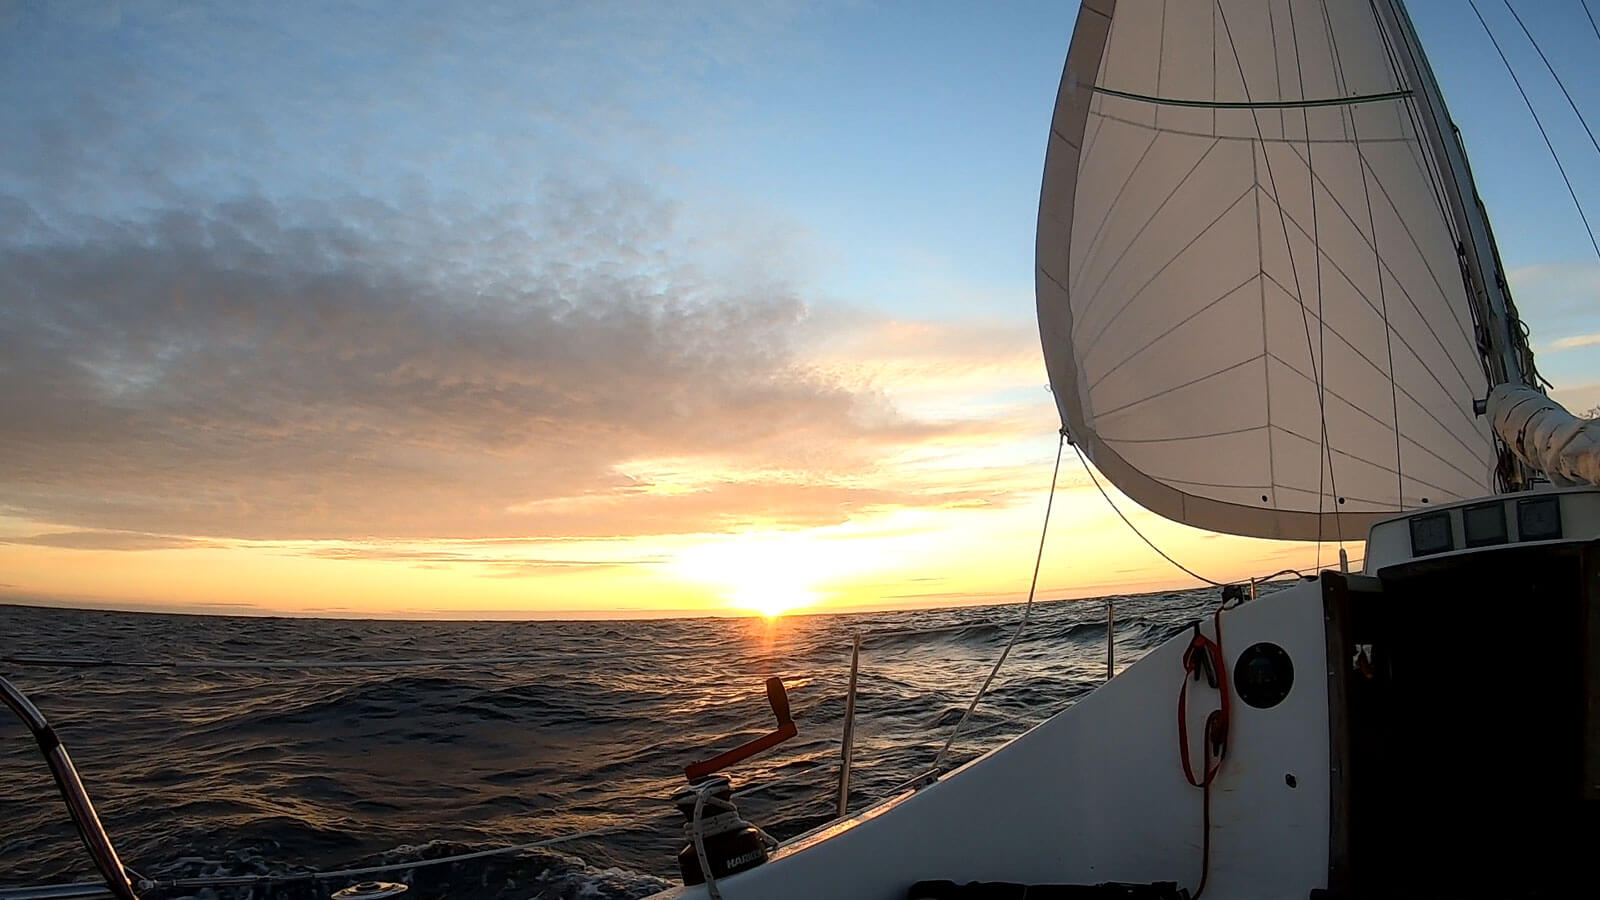 Soleil pointant à l&rsquo;horizon sur la mer, vu depuis un voilier&rsquo;